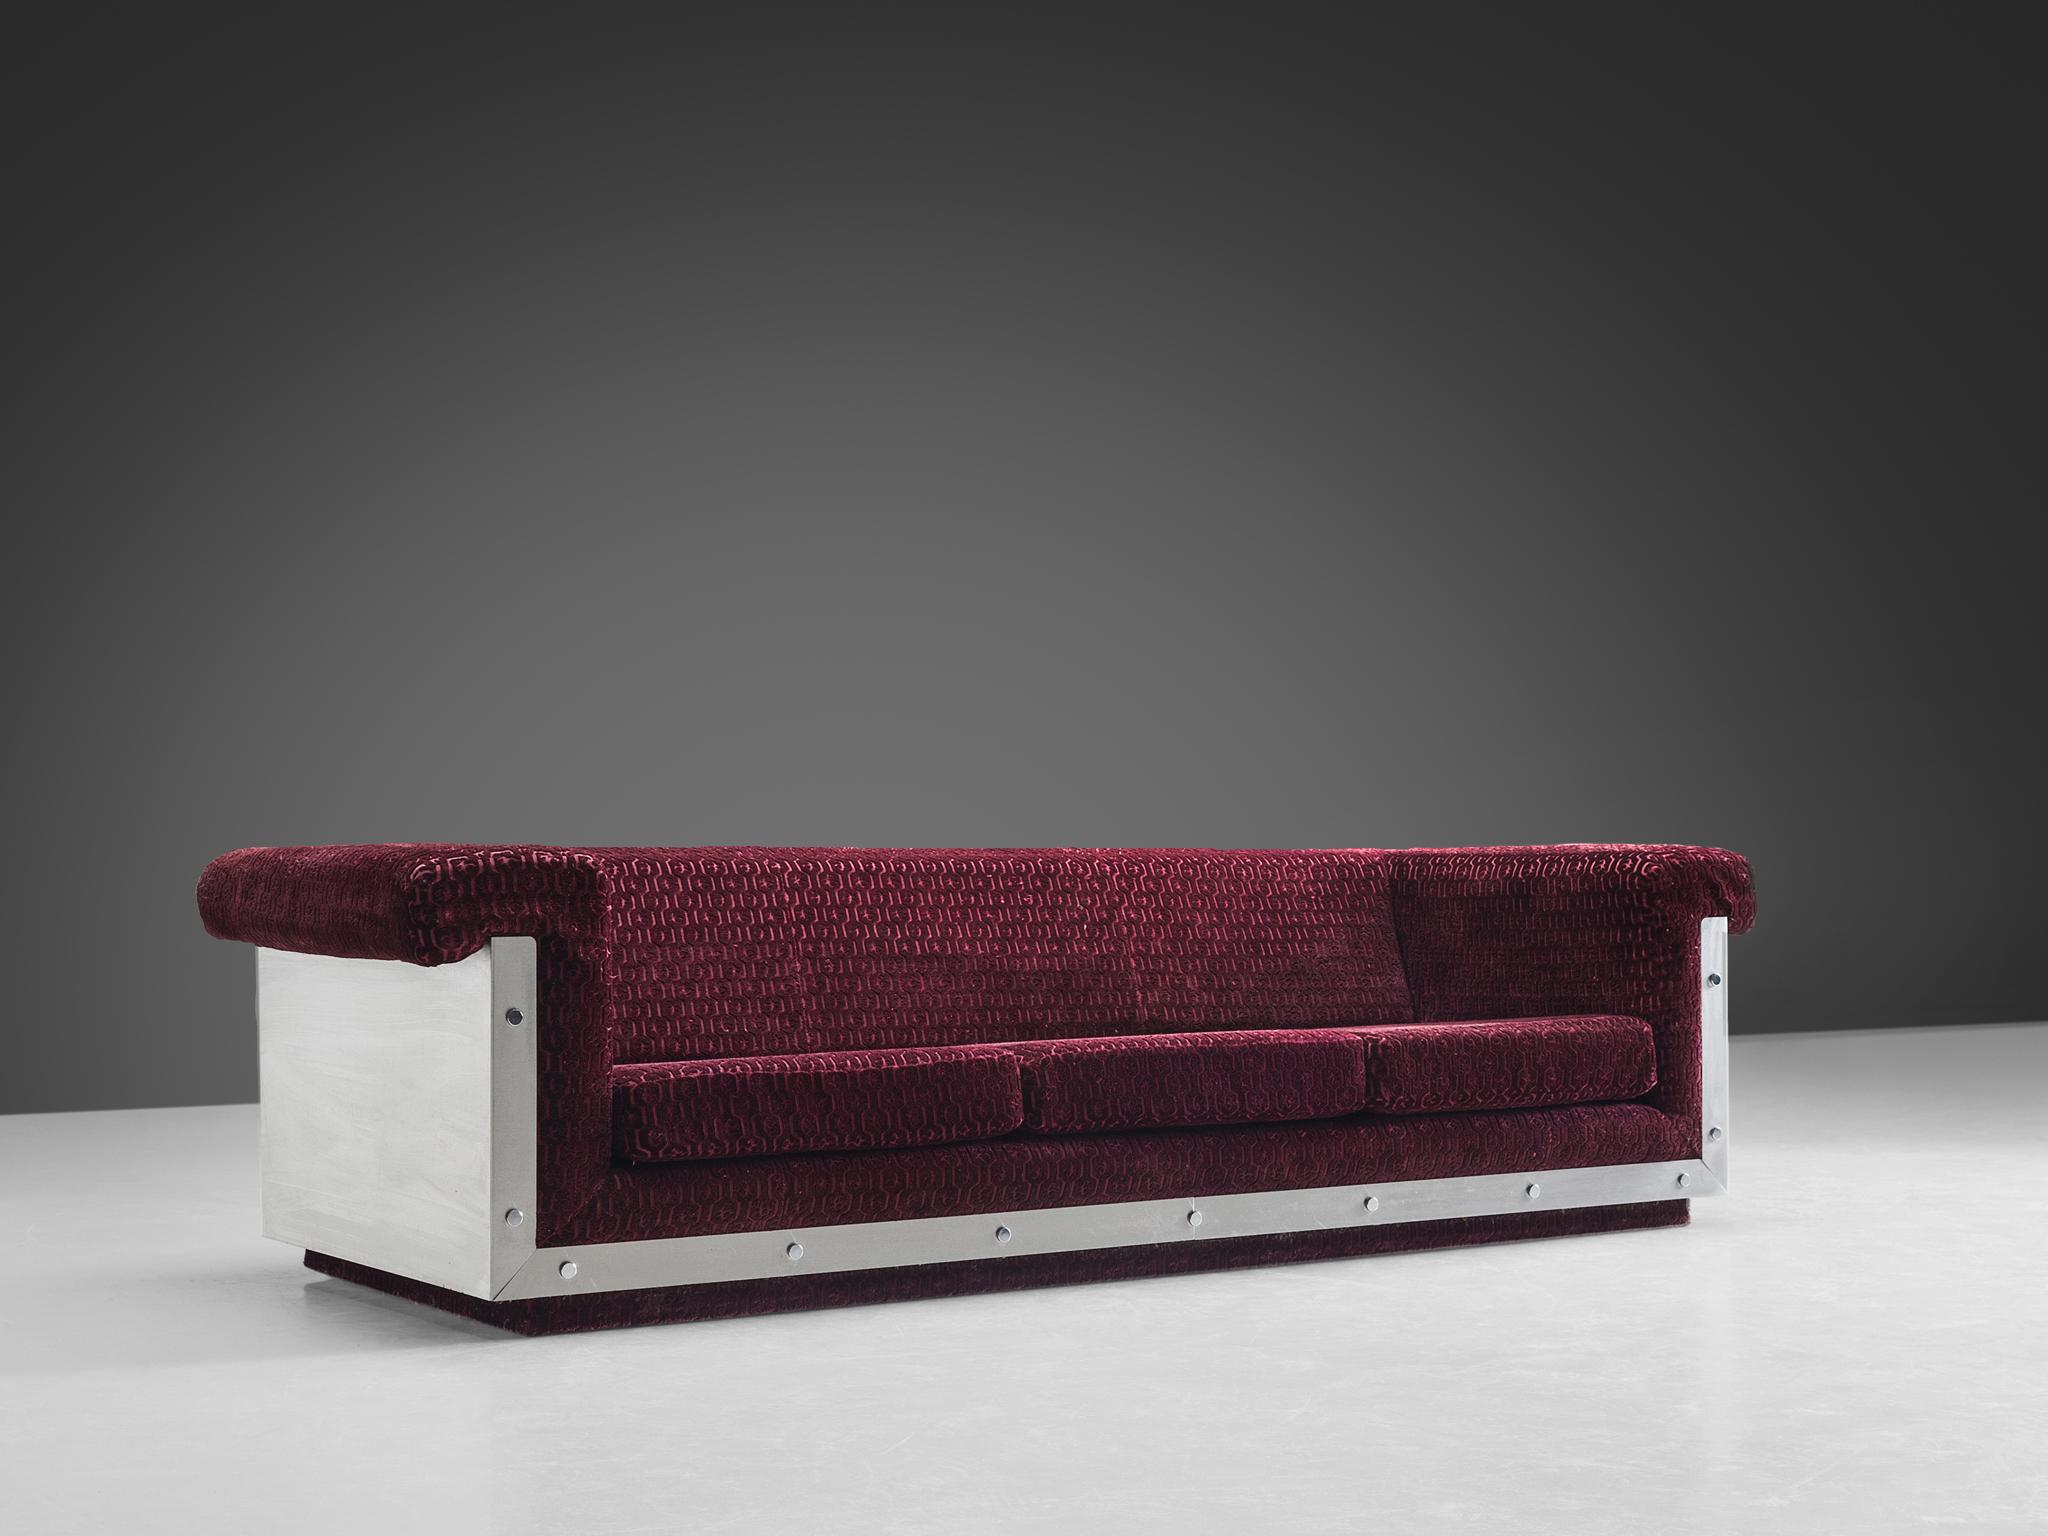 Postmodern French Sofa in Stainless Steel and Burgundy Velvet Upholstery 1